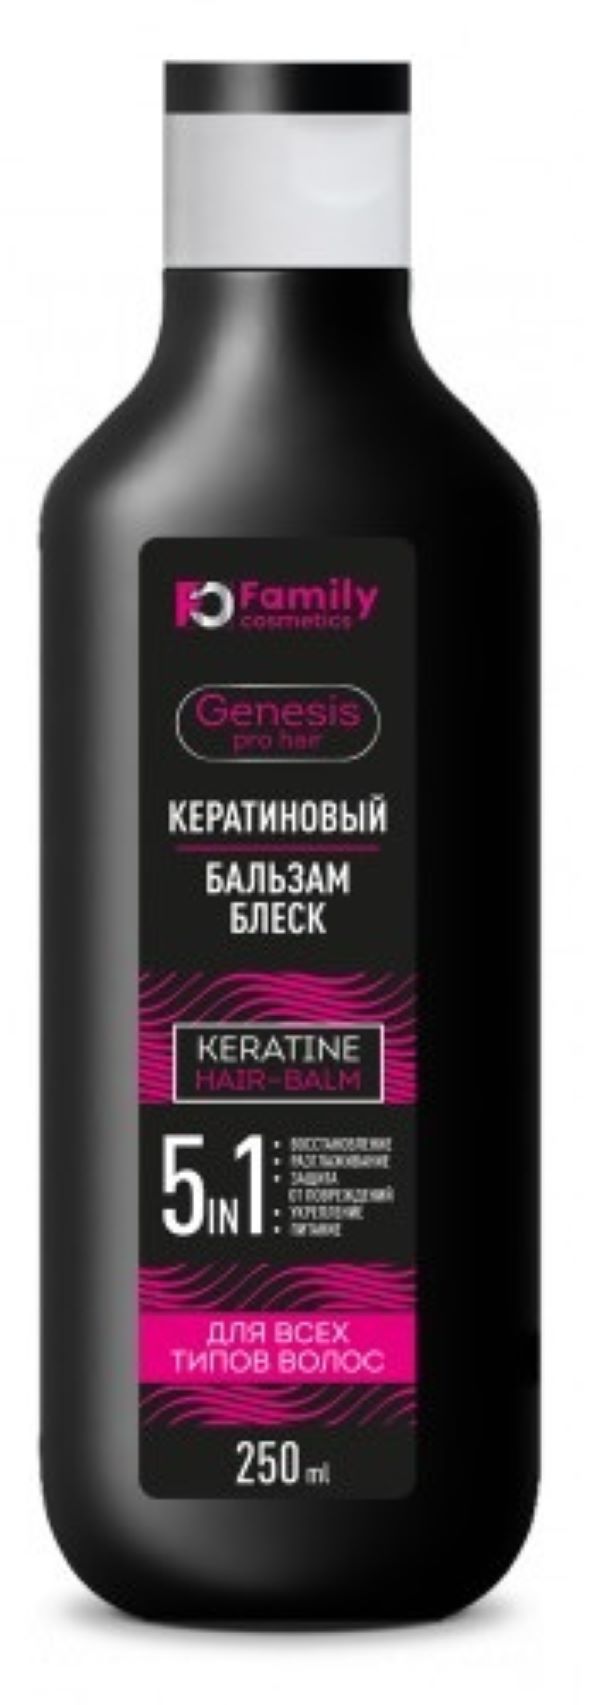 Бальзам Family Cosmetics кератиновый для всех типов волос, 250 мл х 2шт. бальзам для волос с кератином и протеинами шёлка beauty family